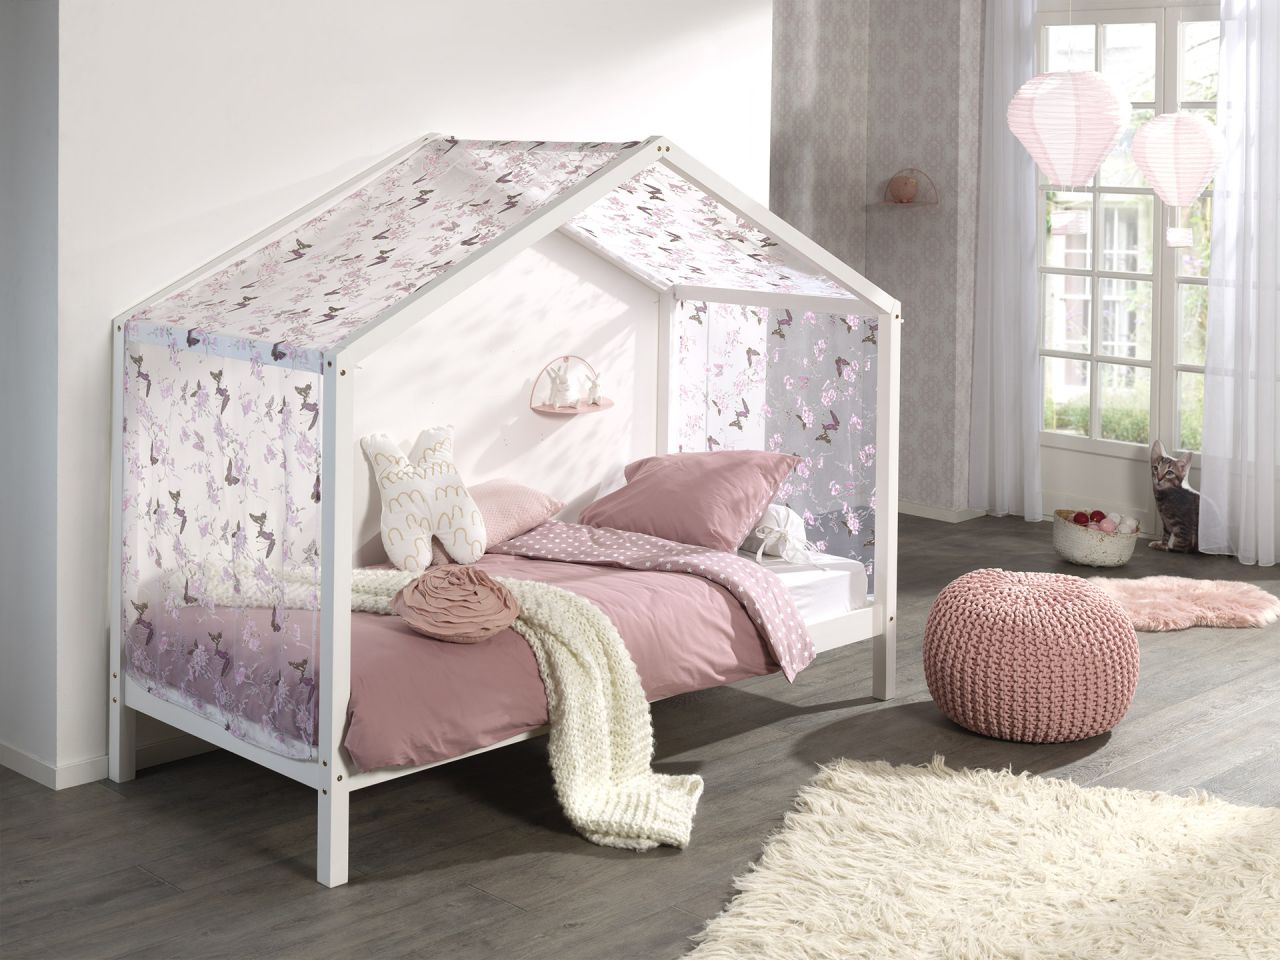 Vipack: Hausbett + Textilhimmel – Spielbett Kinderbett Jugendbett – Massiv Weiß